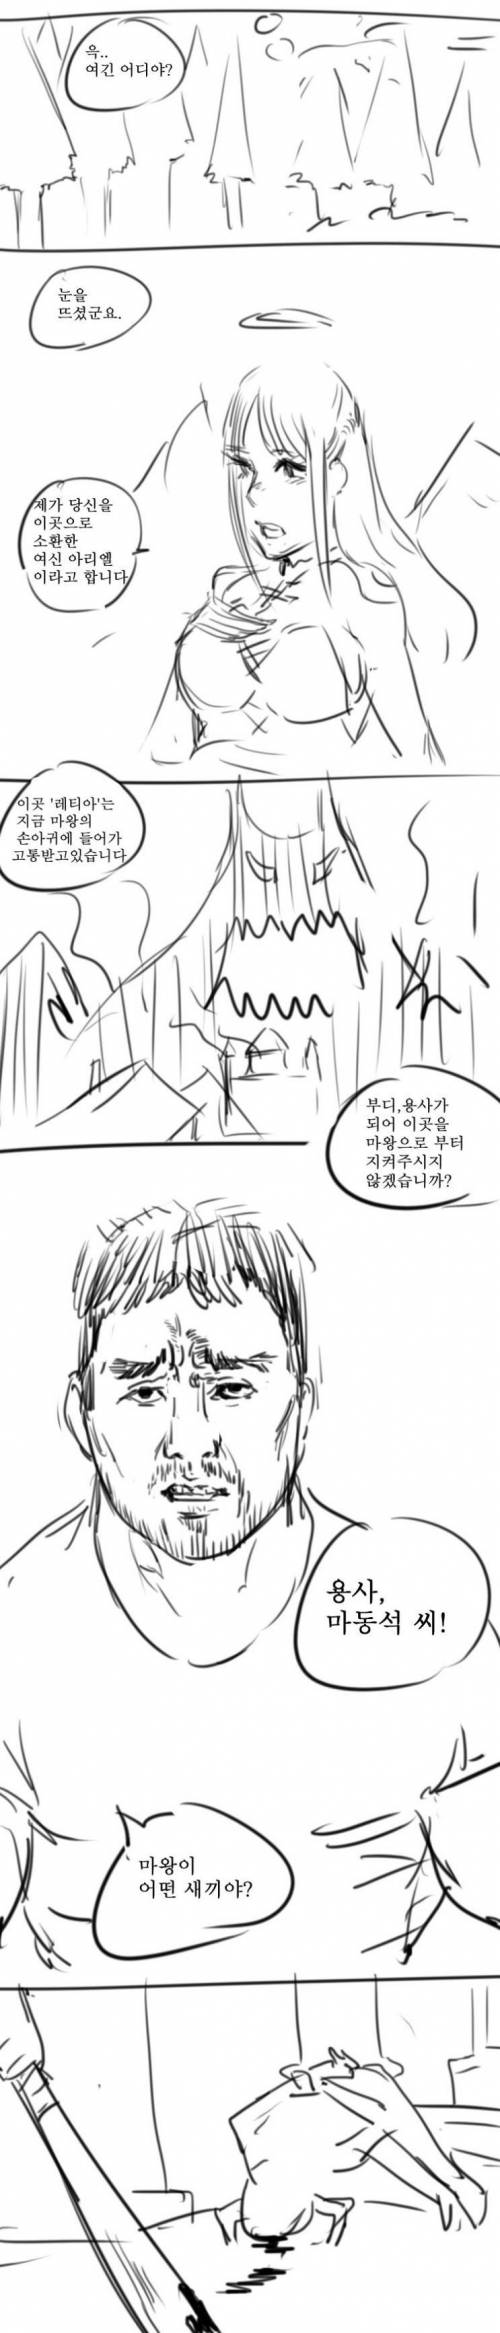 일본을 그냥 씹어먹을 한국형 이세계 소환 깽판물 만화.manhwa